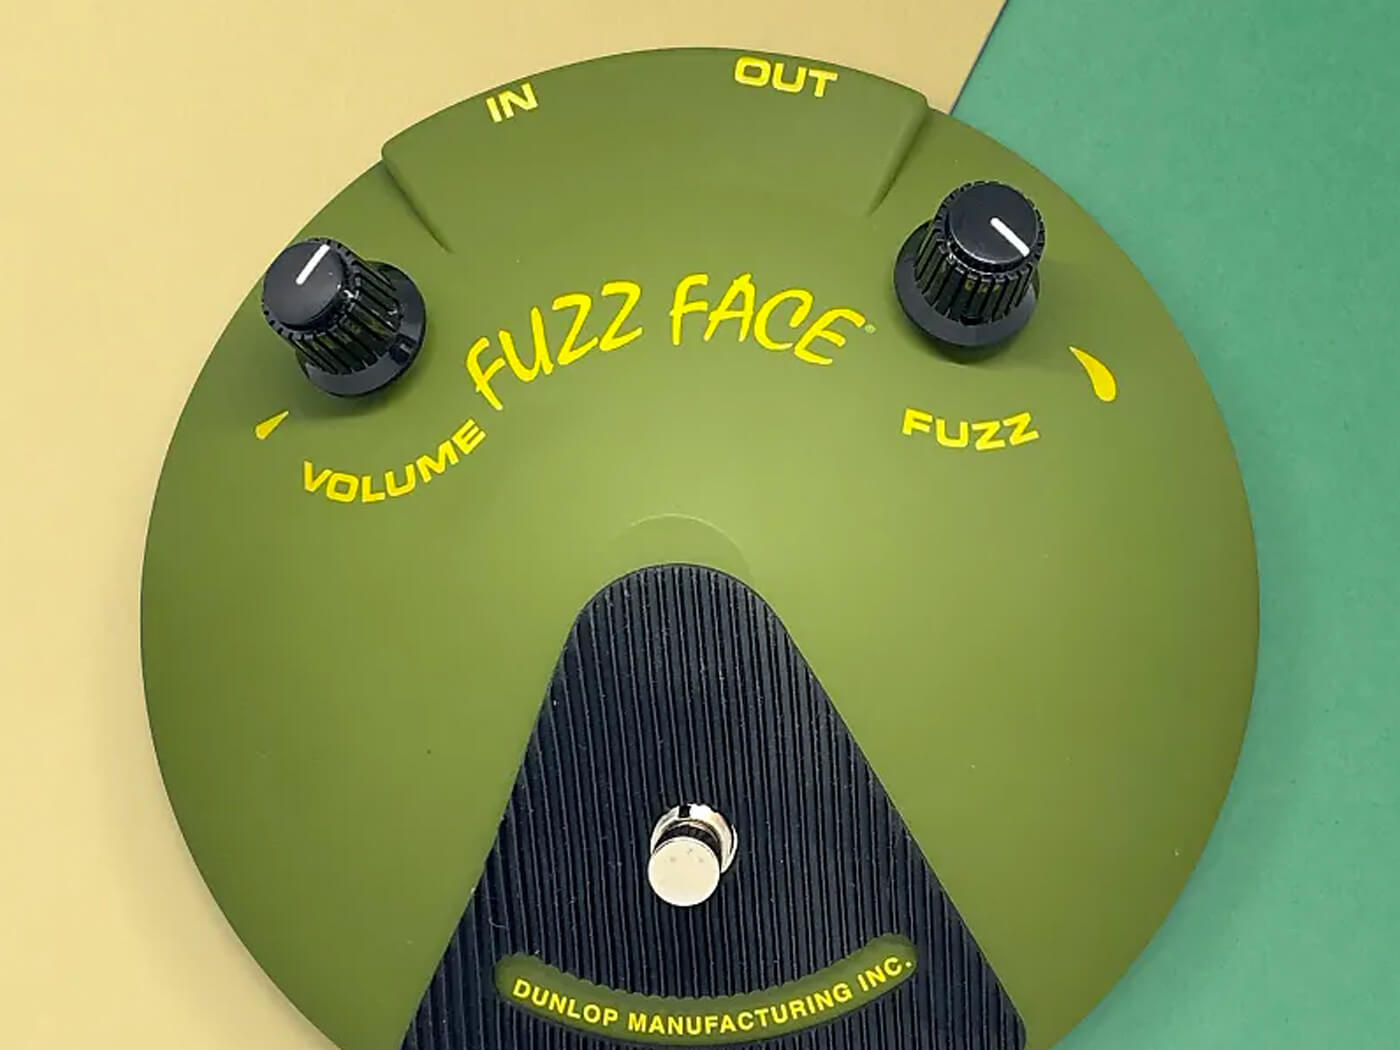 Dunlop / Jeorge Tripps / Reverb.com Fuzz Face